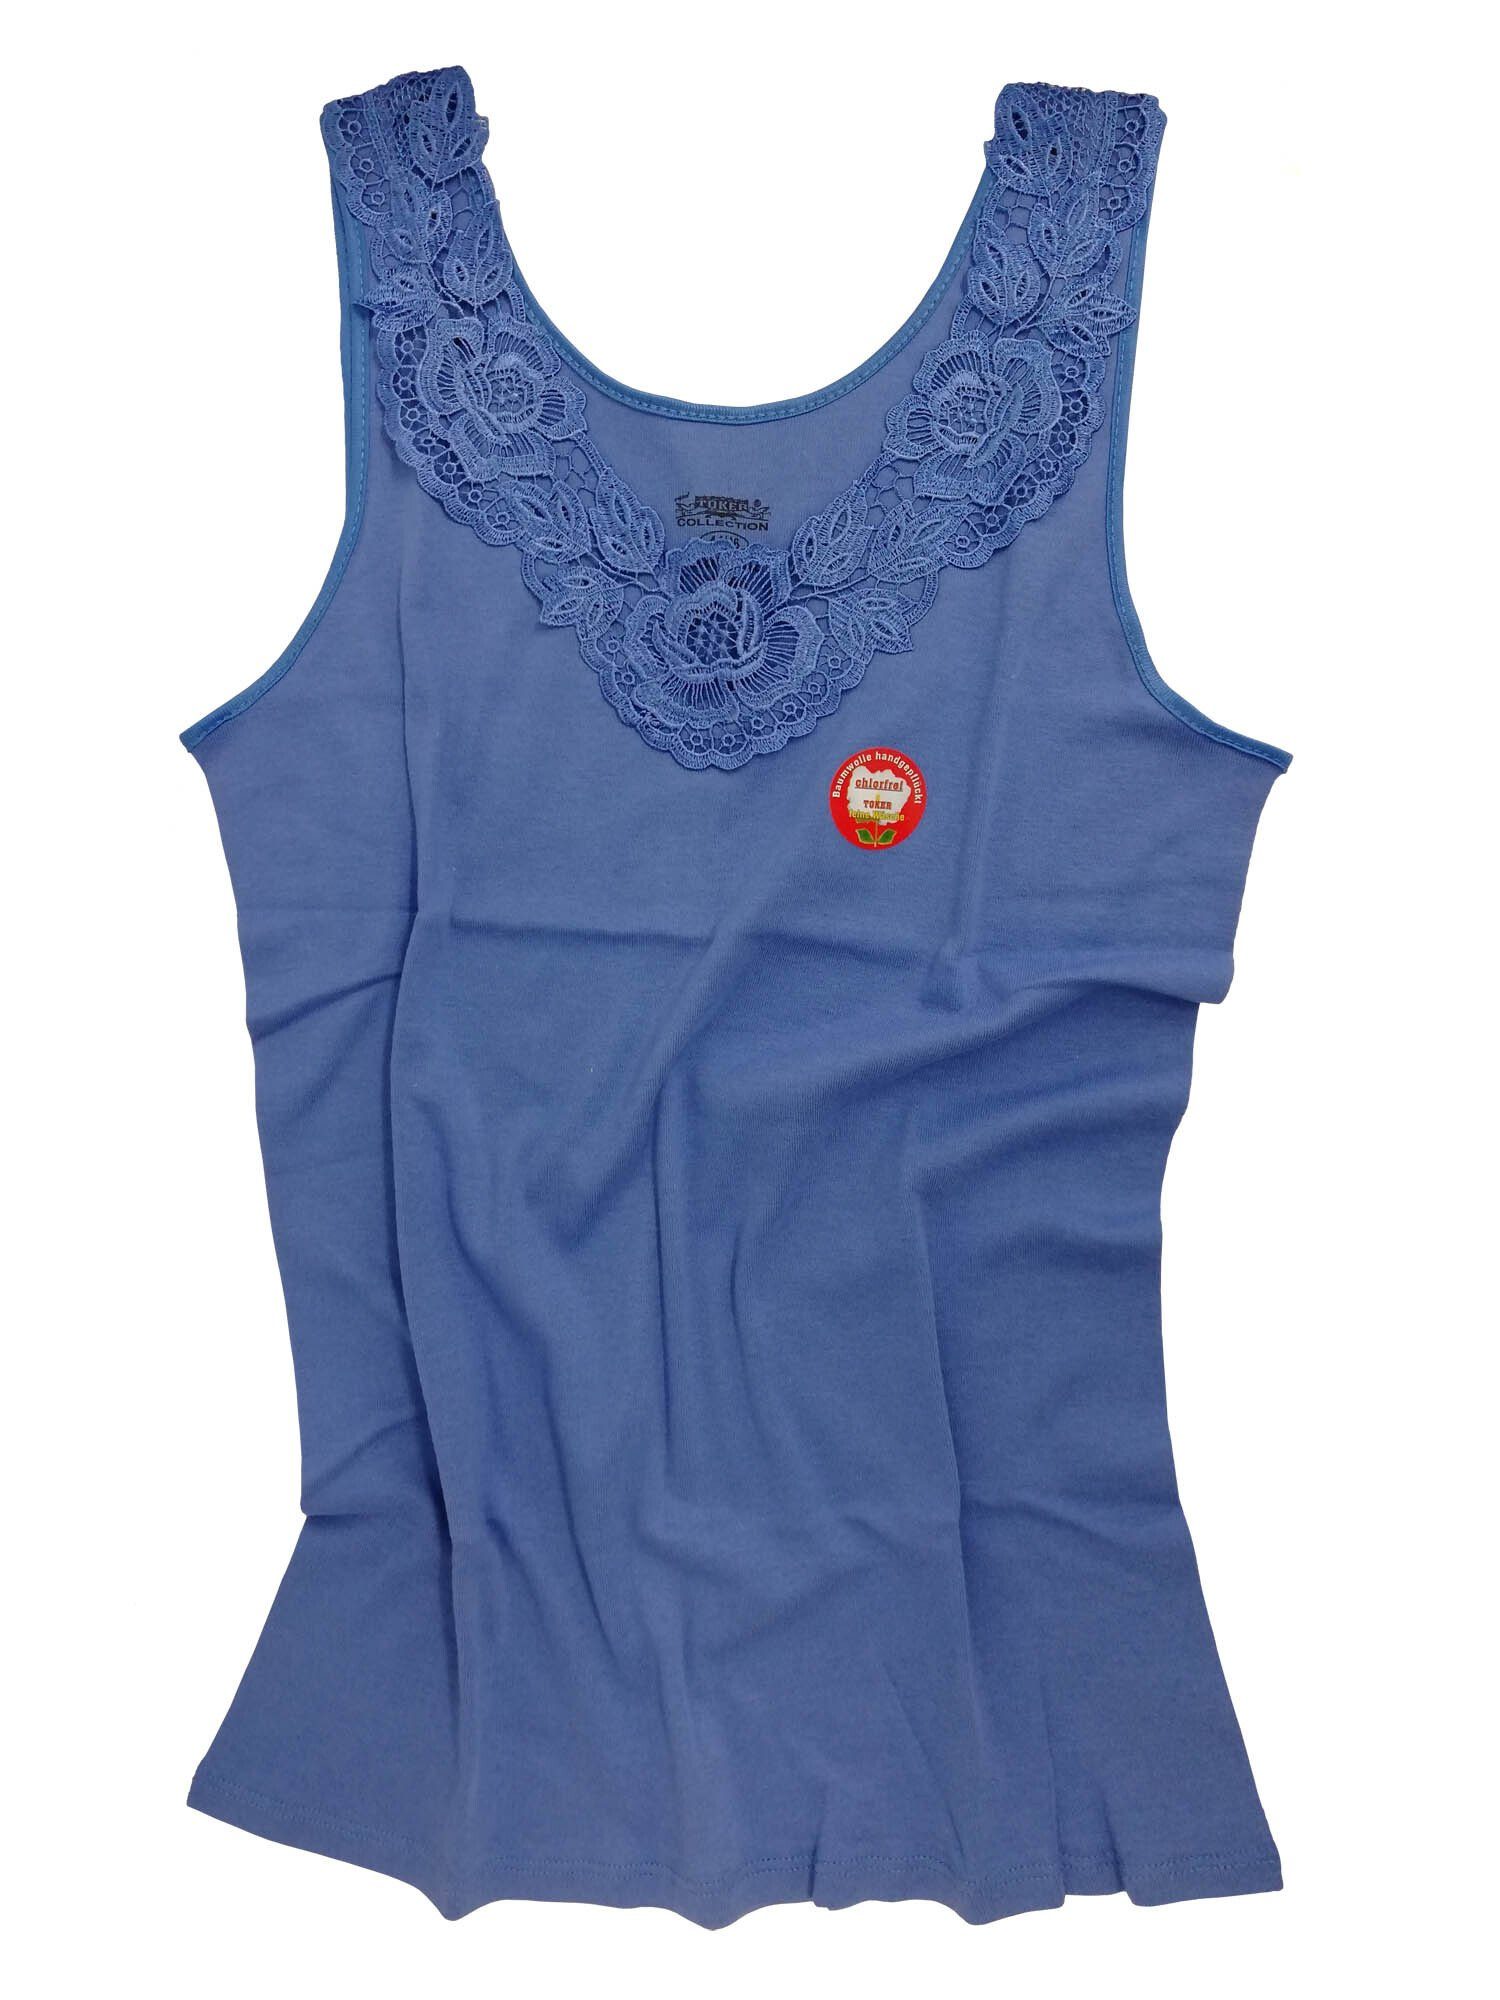 Cotton Prime® Unterhemd mit royal blau angenehmer Baumwollqualität in Spitze